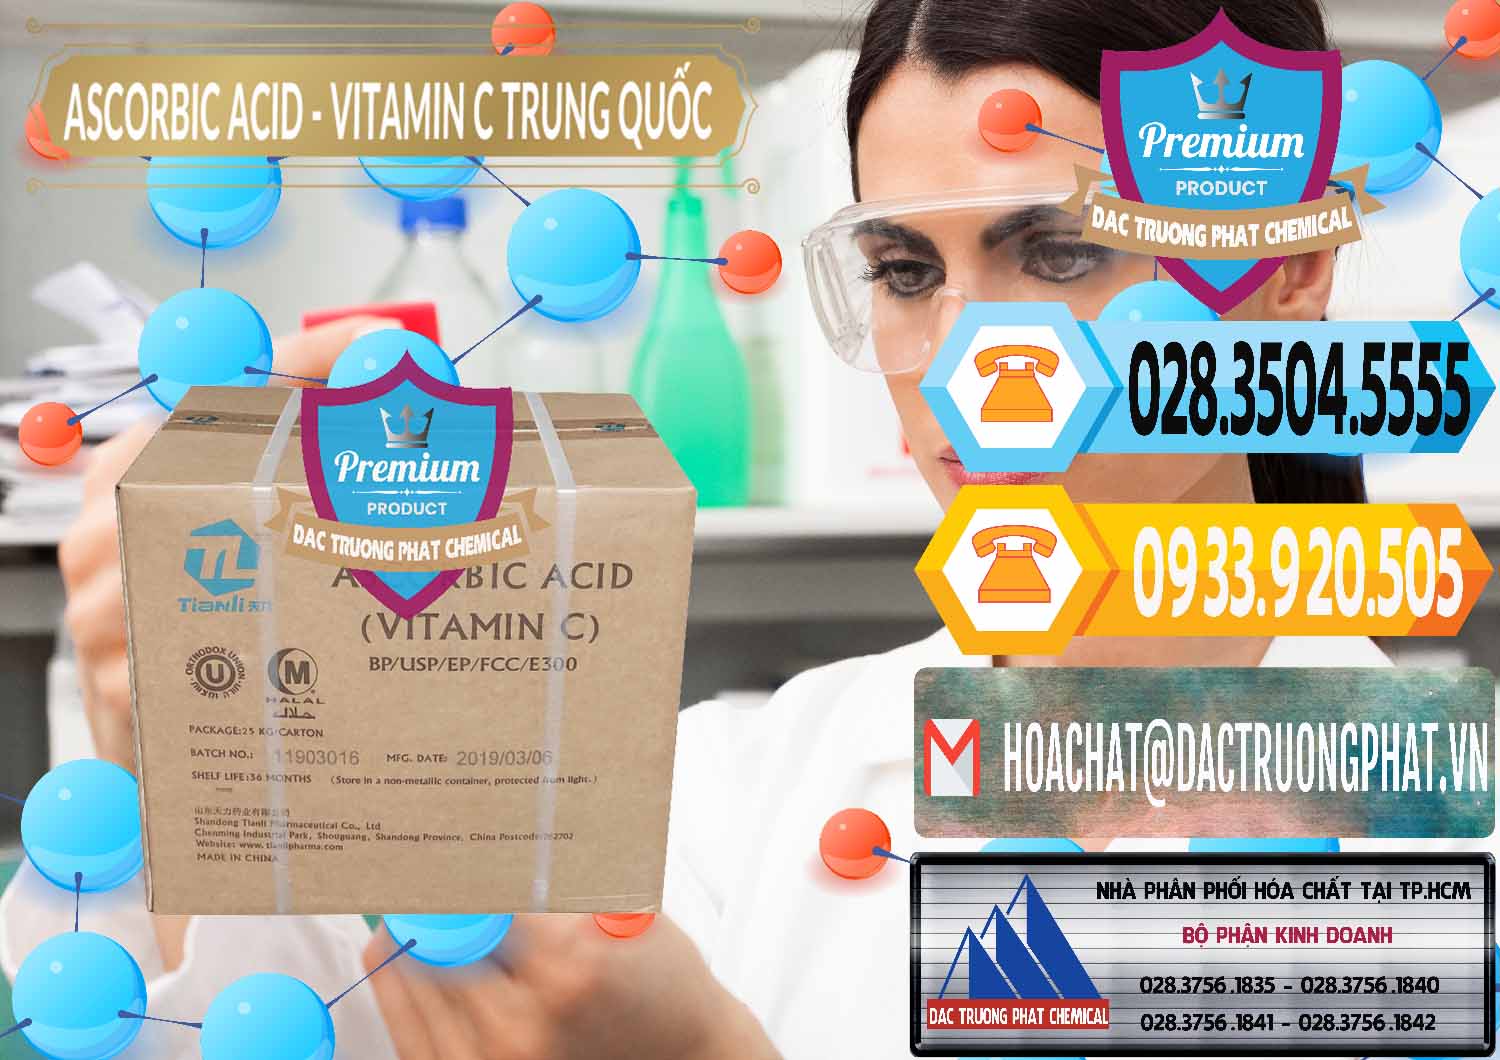 Công ty chuyên kinh doanh ( bán ) Axit Ascorbic - Vitamin C Trung Quốc China - 0309 - Cty nhập khẩu ( phân phối ) hóa chất tại TP.HCM - hoachattayrua.net